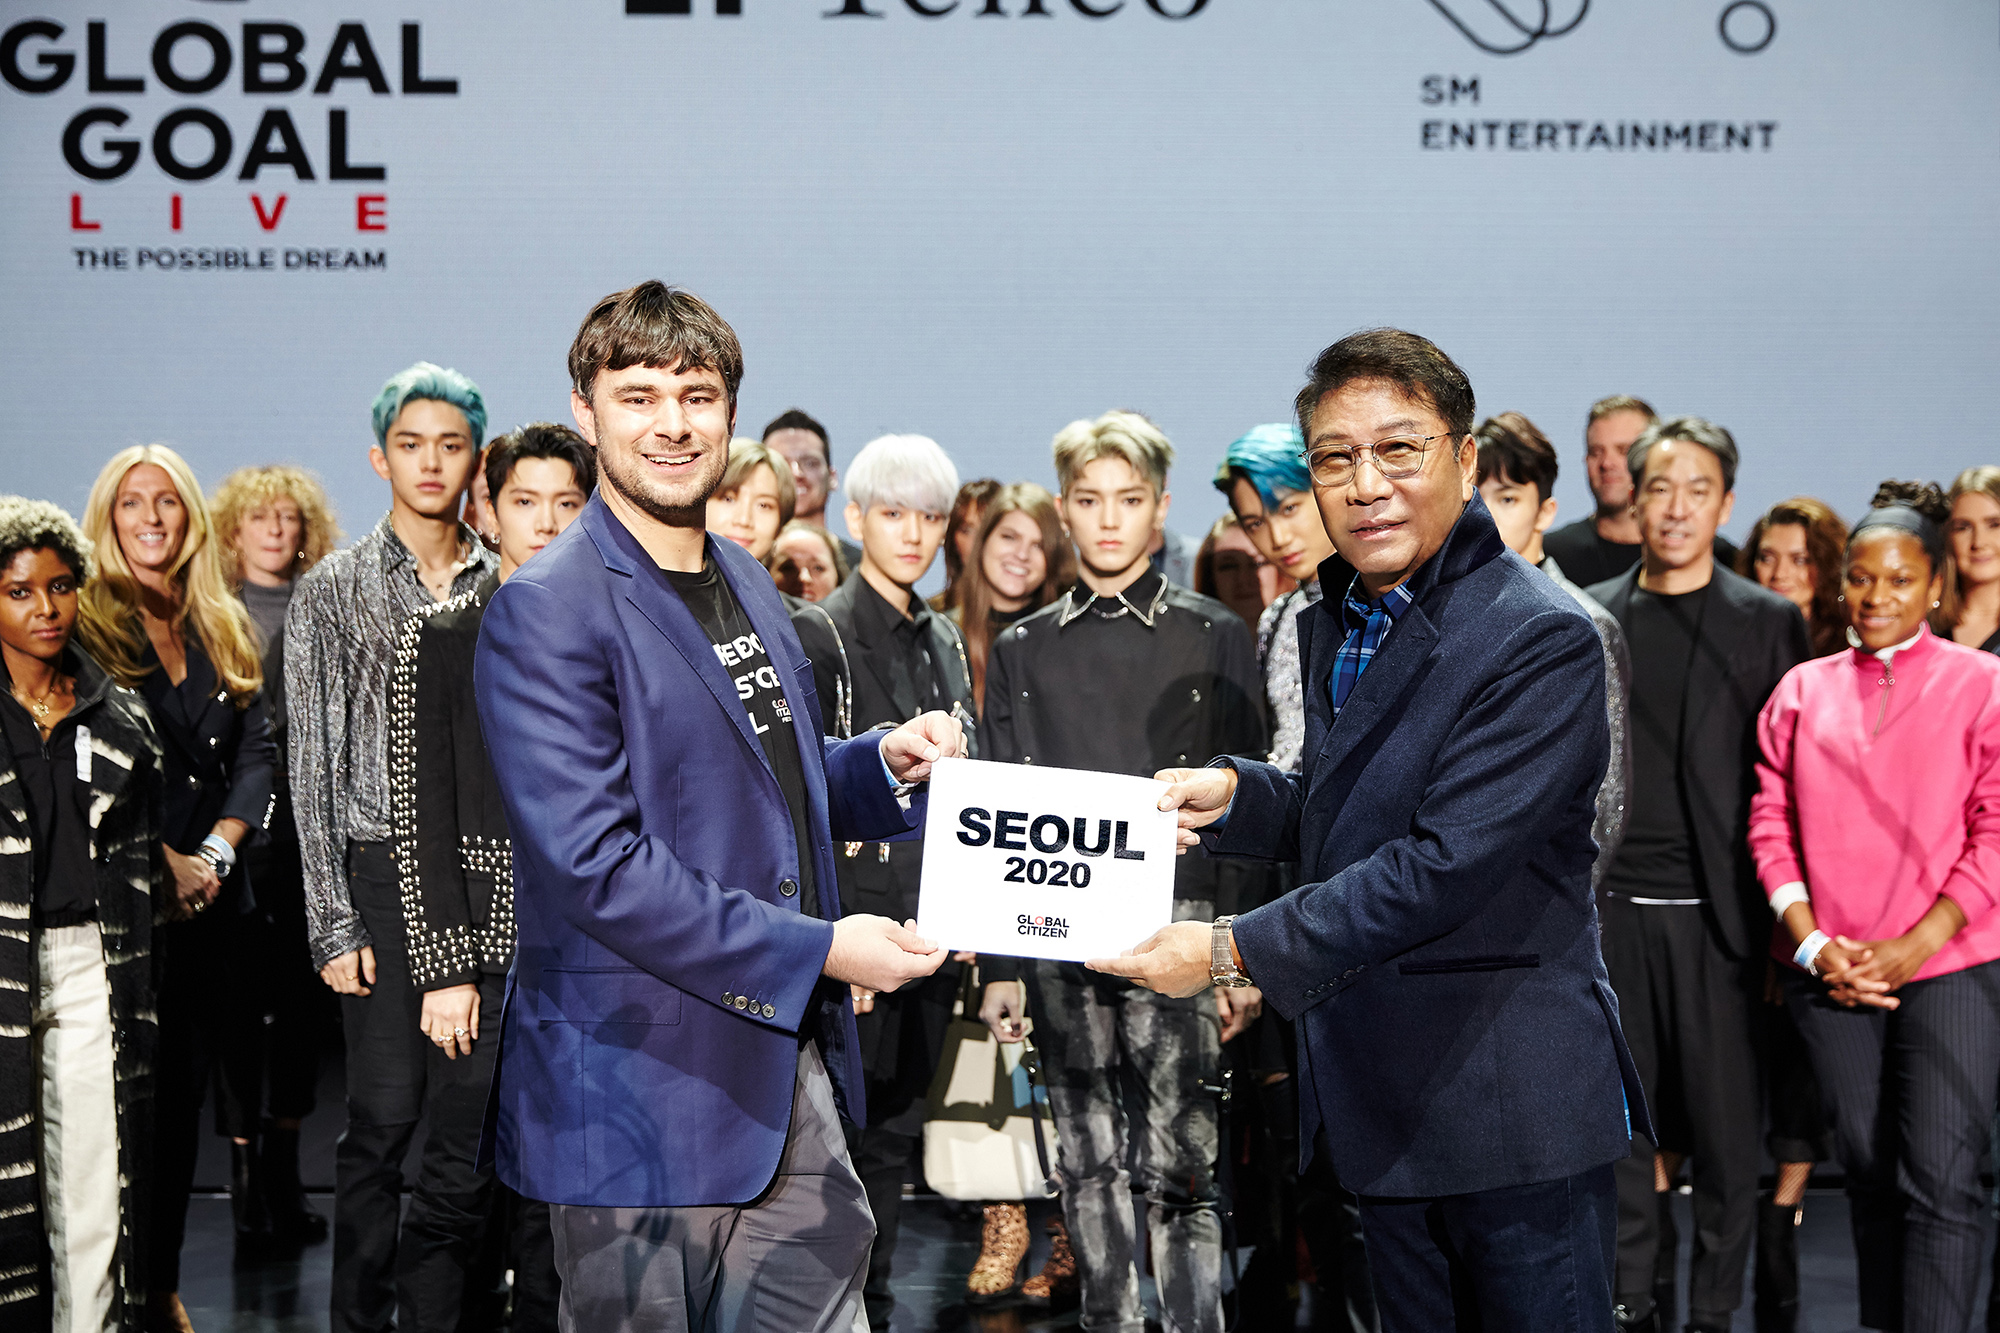 이수만(오른쪽) SM 총괄 프로듀서가 19일(현지시간) 미국 뉴욕 메디슨 스퀘어 가든에서 글로벌 시티즌 공동창랍자인 사이먼 모스(왼쪽)과 만난 자리에서 내년 9월 열리는 ‘글로벌 골 라이브: 더 파서블 드림’ 아시아 개최지가 한국 서울임을 발표하고 있다. SM엔터테인먼트 제공